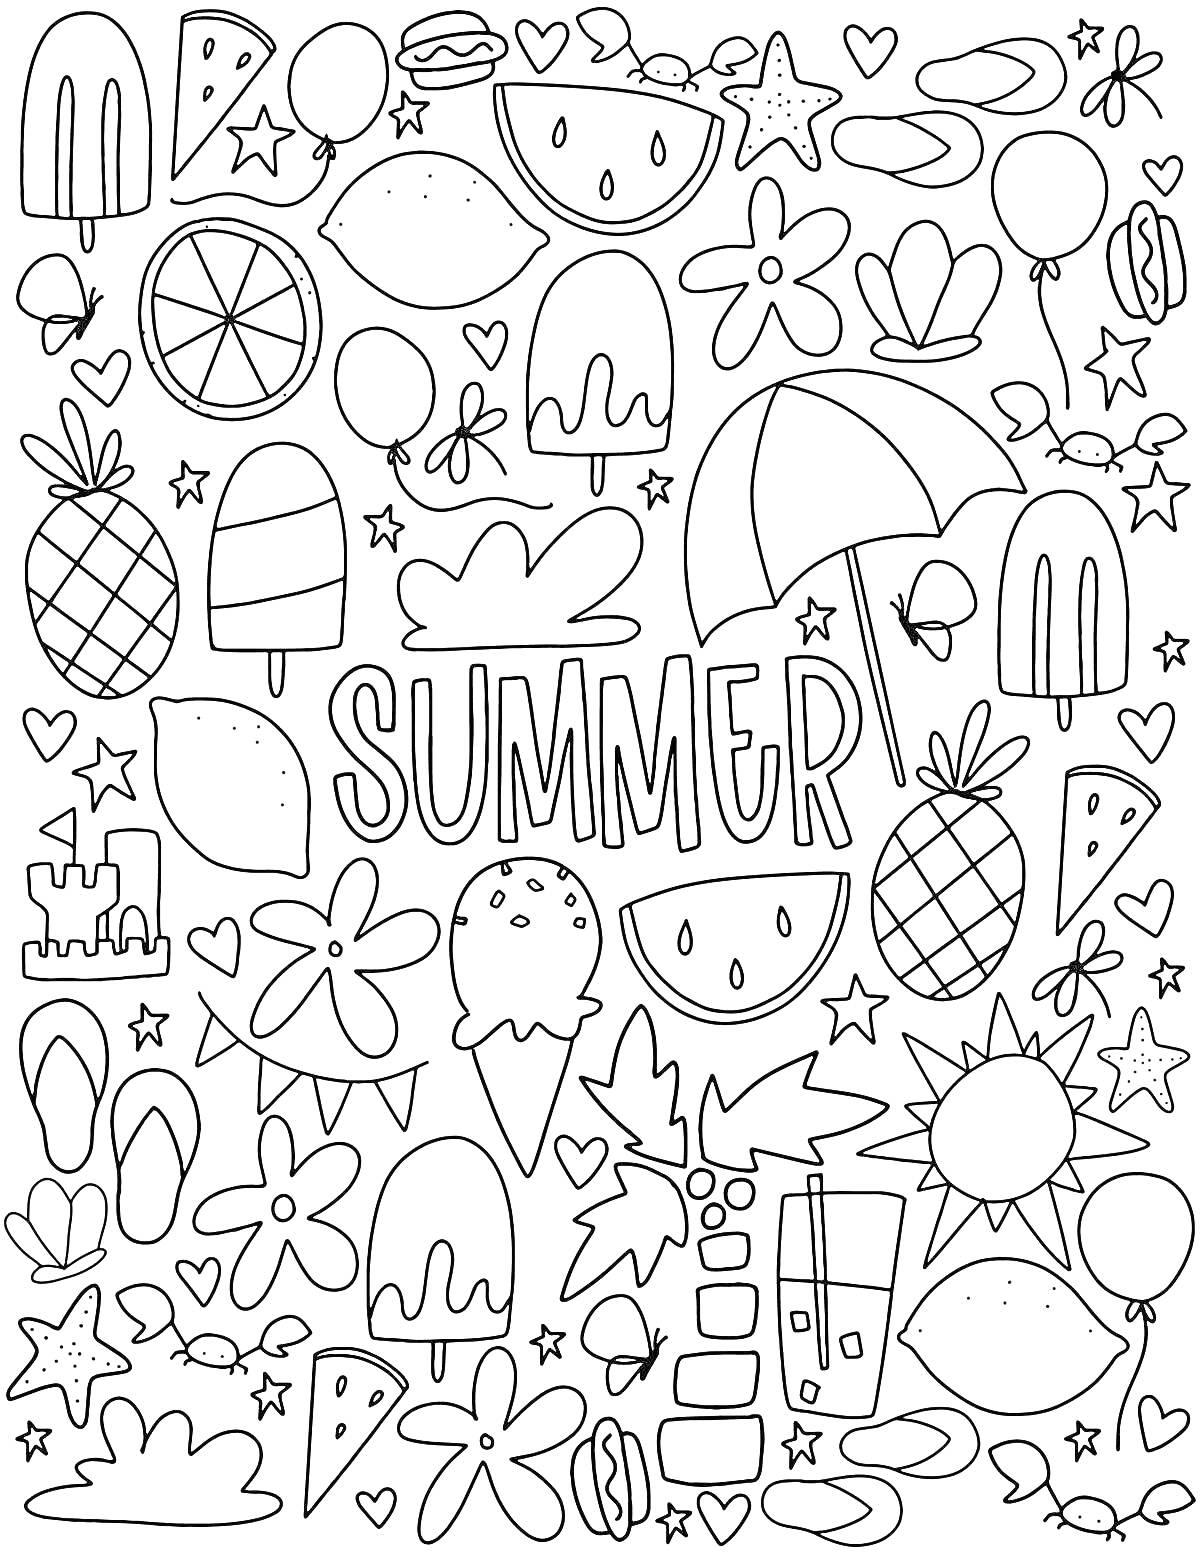 Летние рисунки - арбуз, ананас, мороженое, снежинка, звезды, сердечки, ракушки, листочки, зонтик, шлёпанцы, солнце, воздушные шары, замок из песка, напиток, надпись Summer